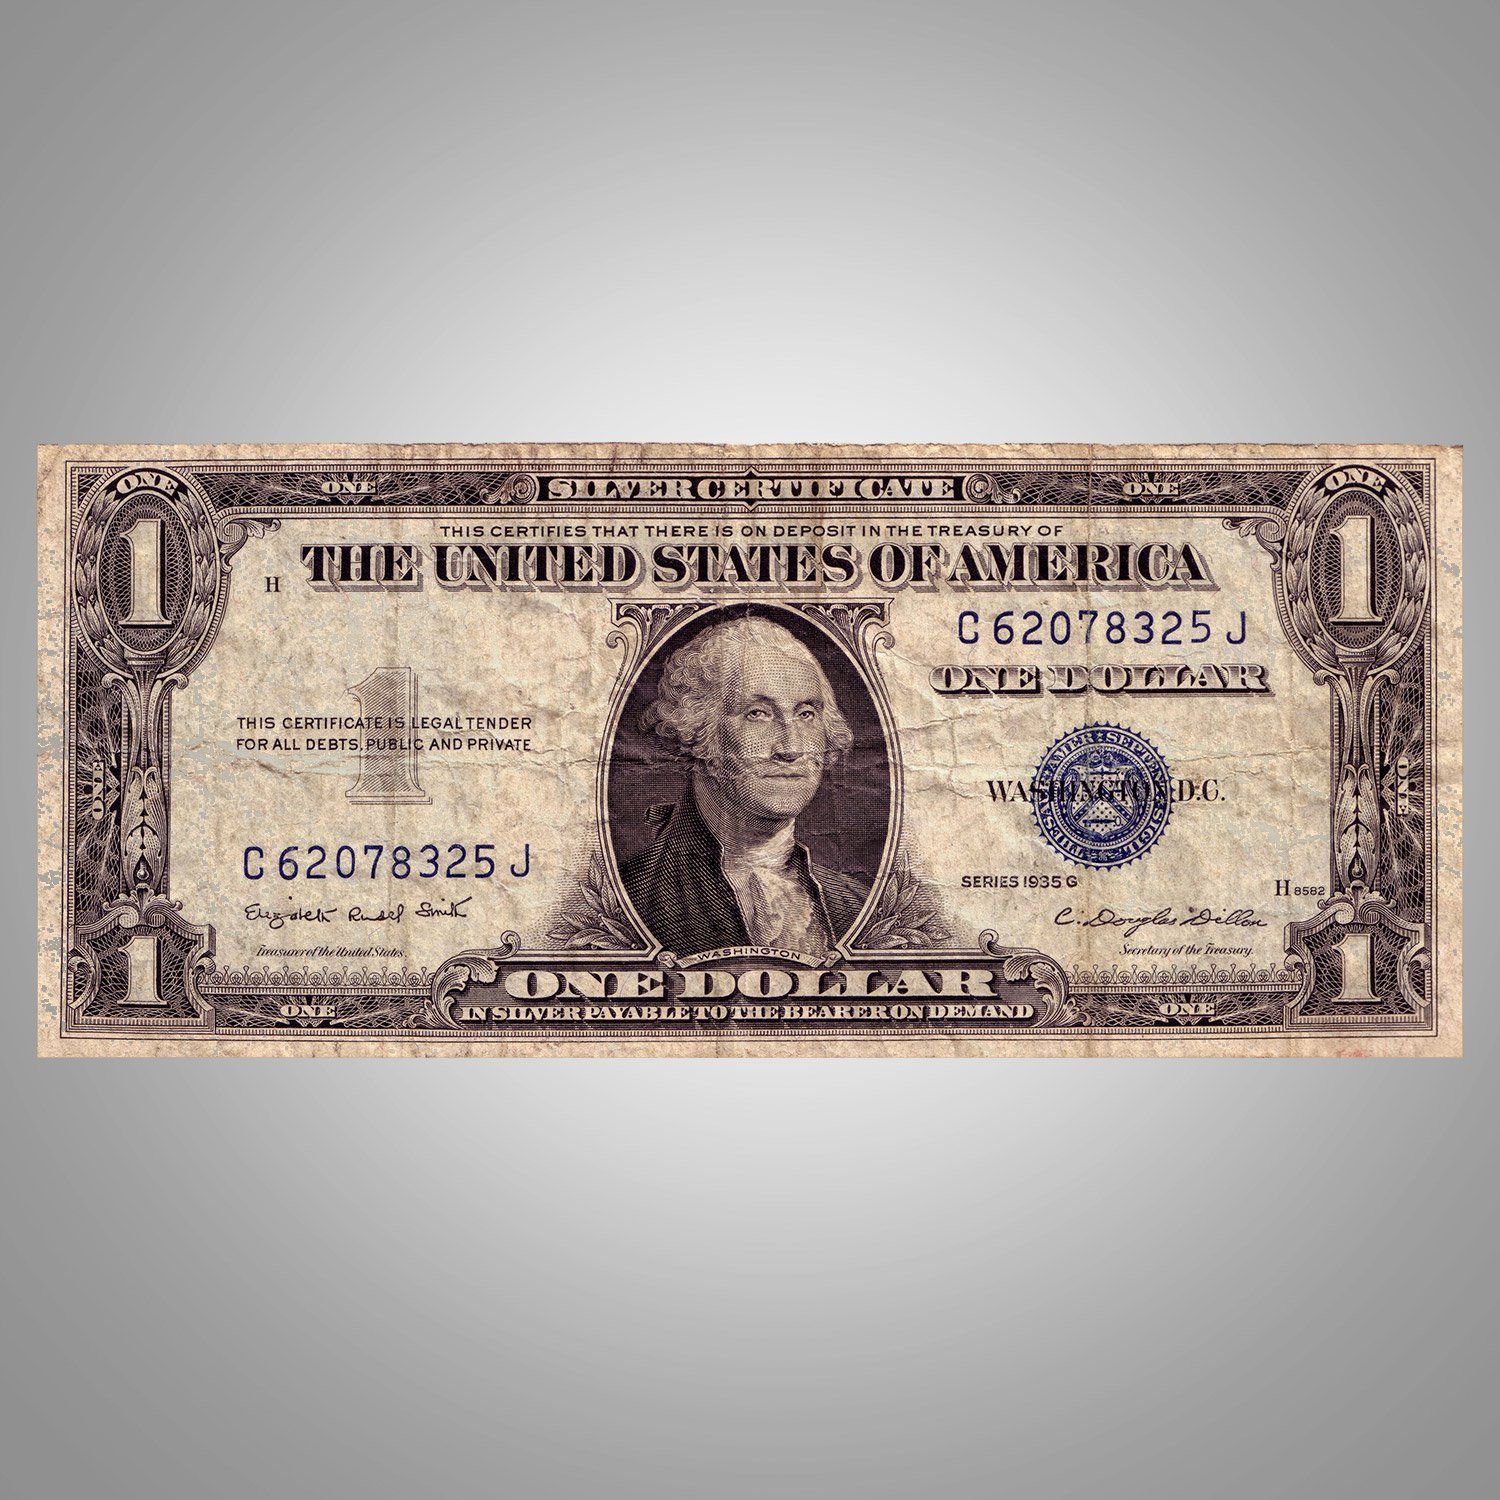 US money